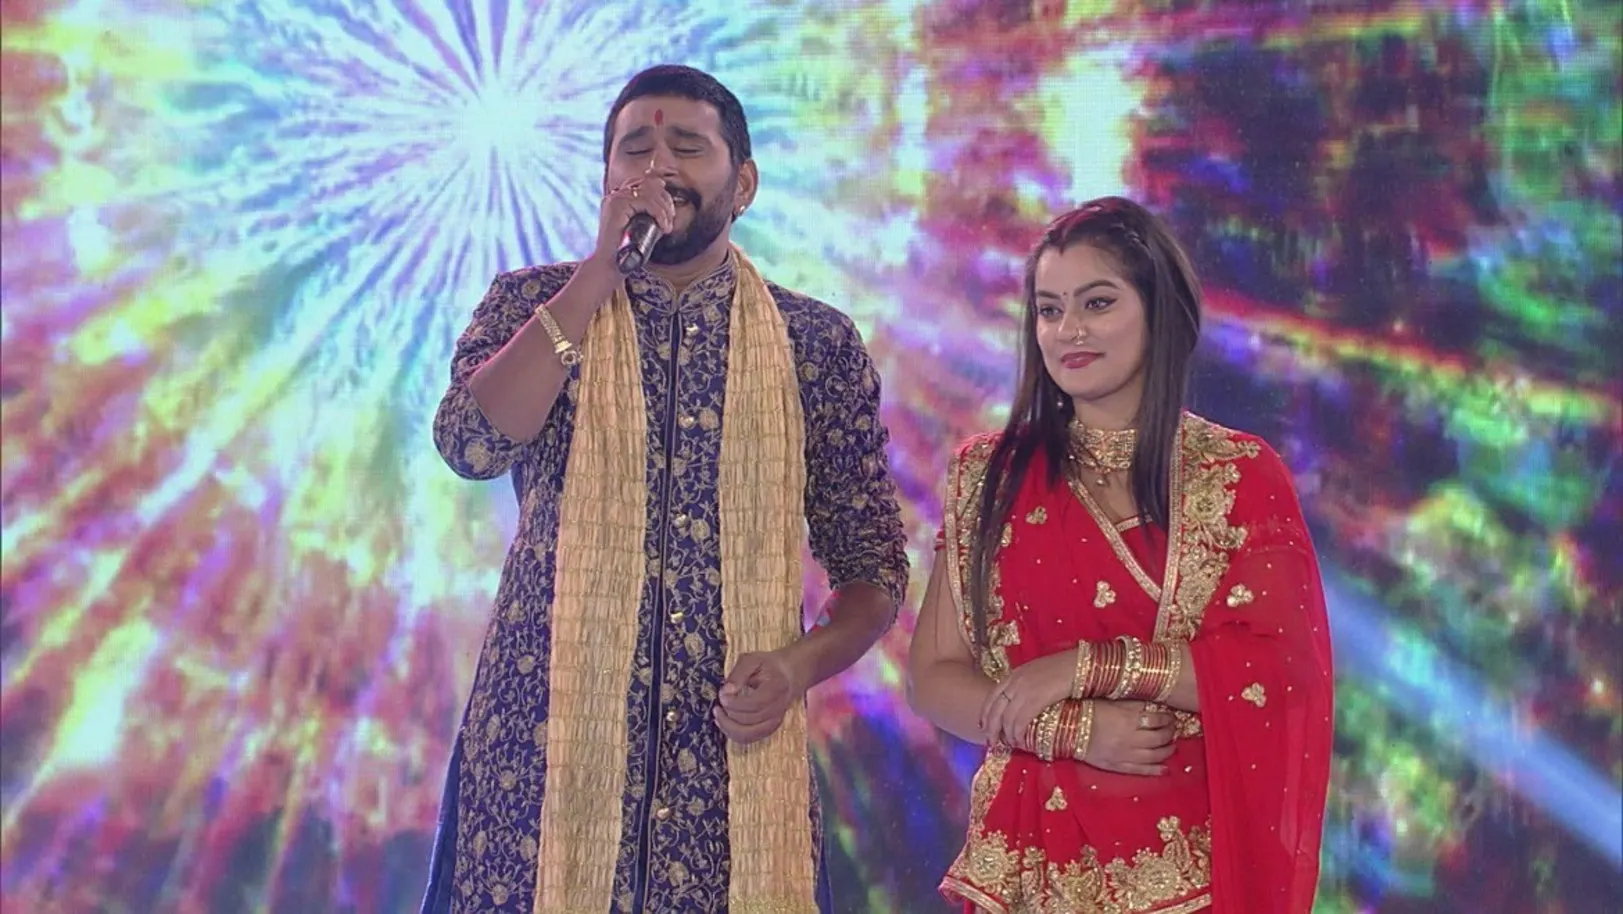 Yash Kumar and Nidhi Jha's performance 